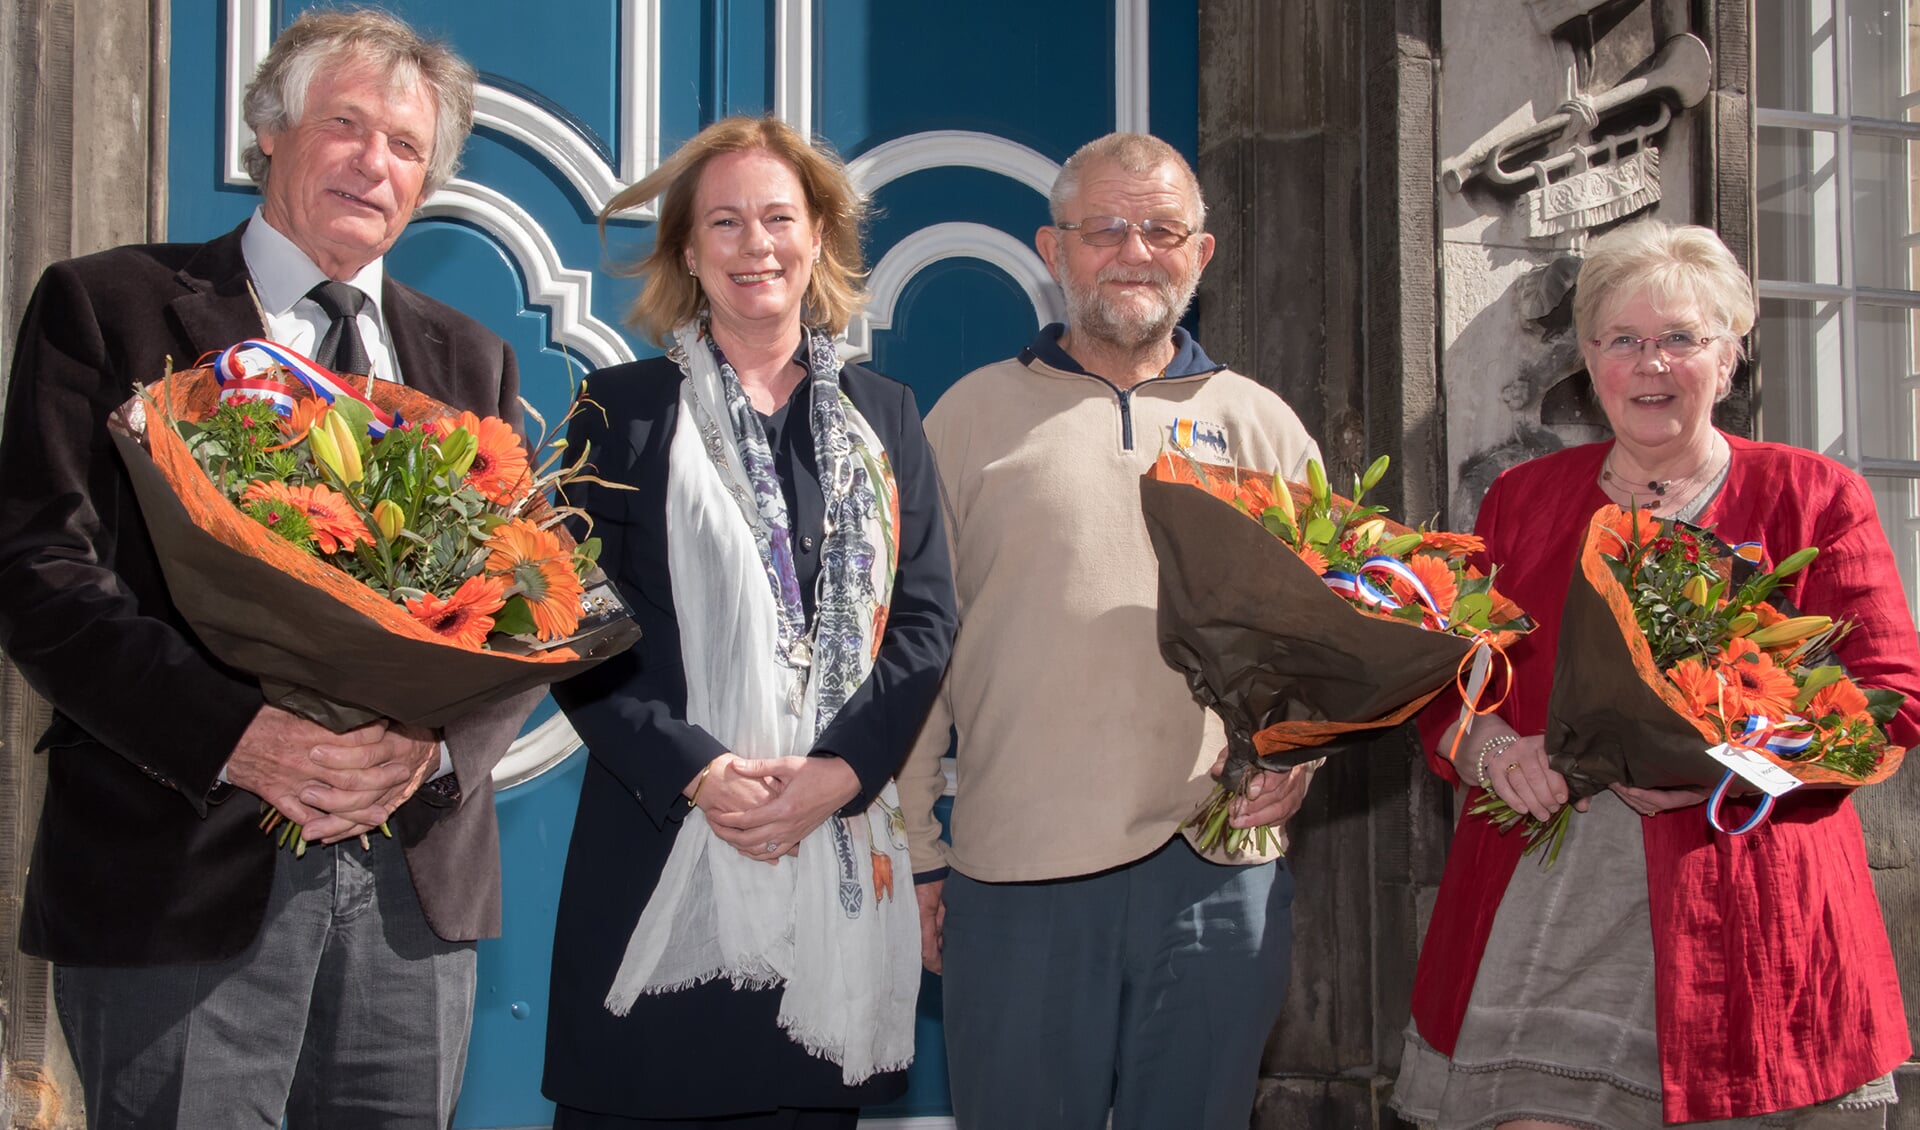 V.l.n.r.: Joop Vreman, burgemeester Annemieke Vermeulen, Marten Zwiep en José Pelgrim-Versteegen. Foto: PR